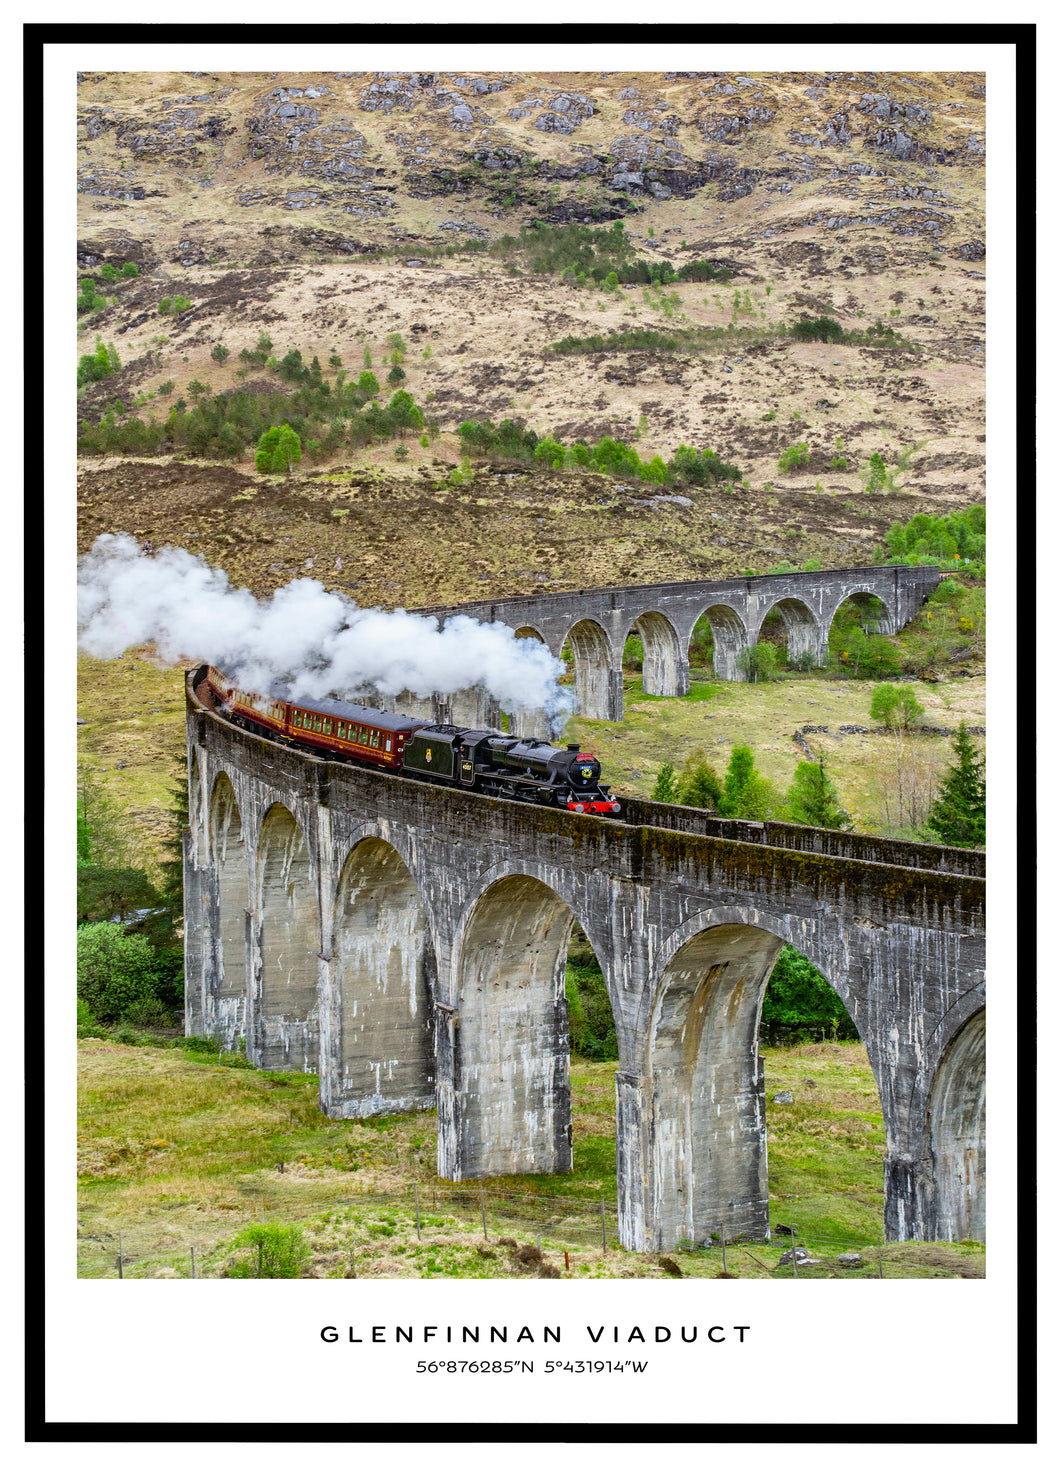 Glenfinnan Viaduct, Scotland - Plakat